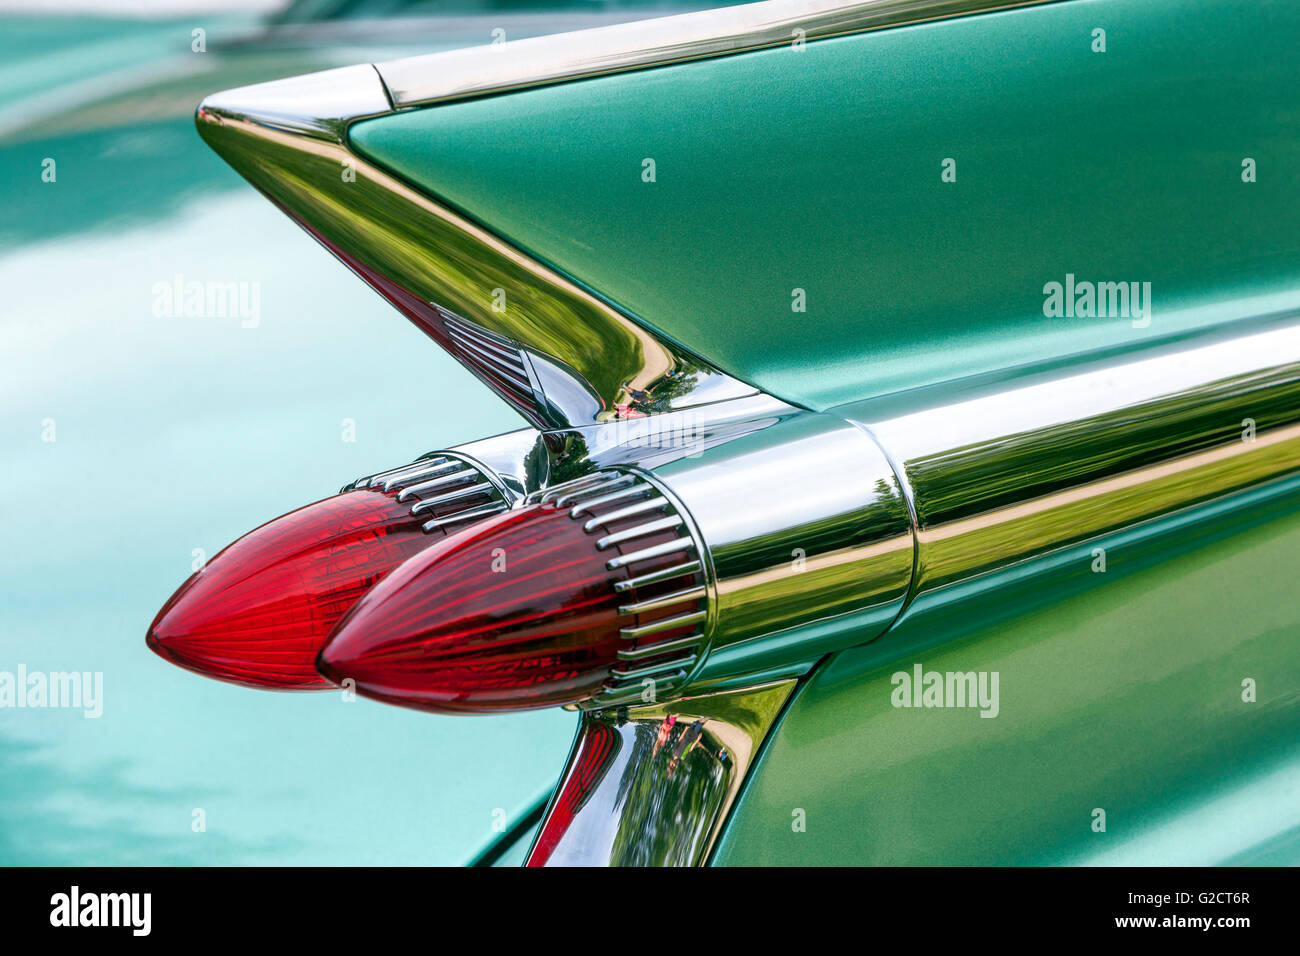 Coche clásico americano, Cadillac Fleetwood 1959 vintage coche luz trasera Foto de stock